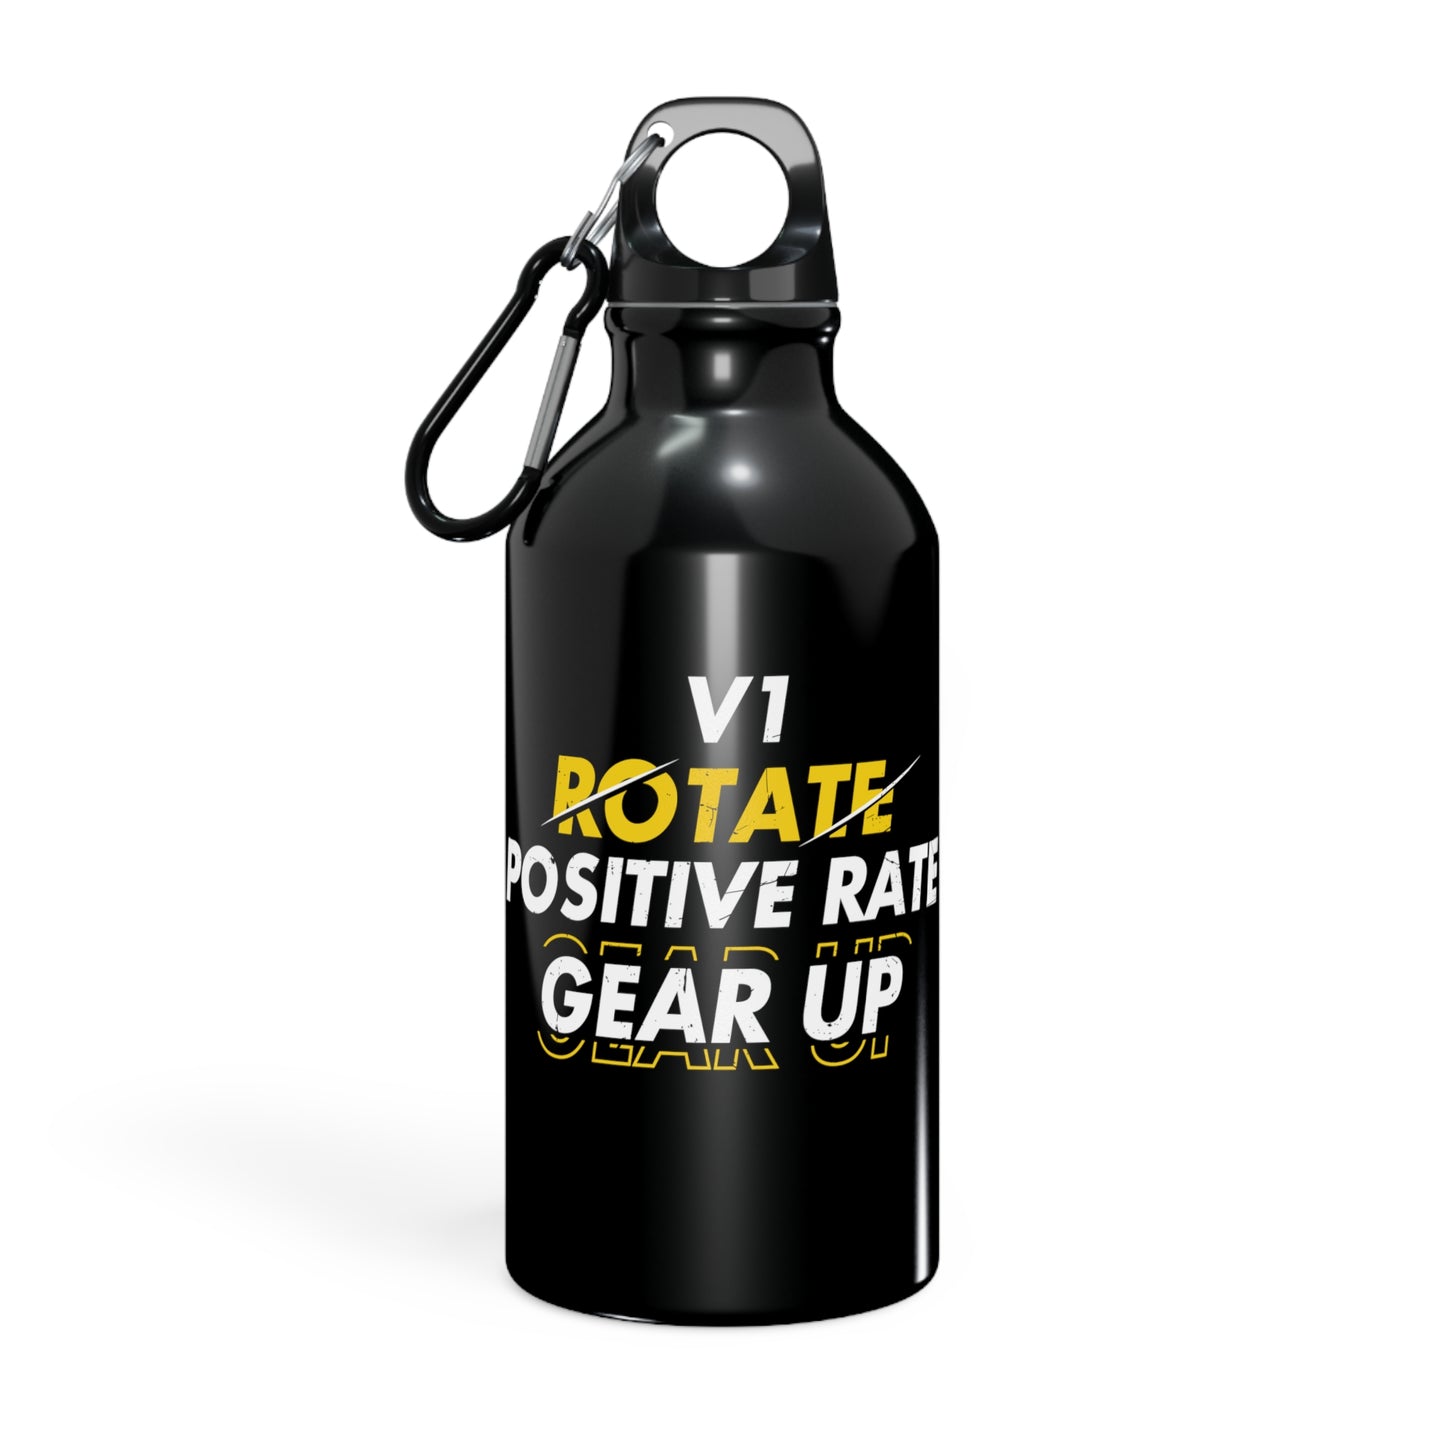 Oregon Sport Bottle - "V1, Rotate, Positive Rate, Gear Up"